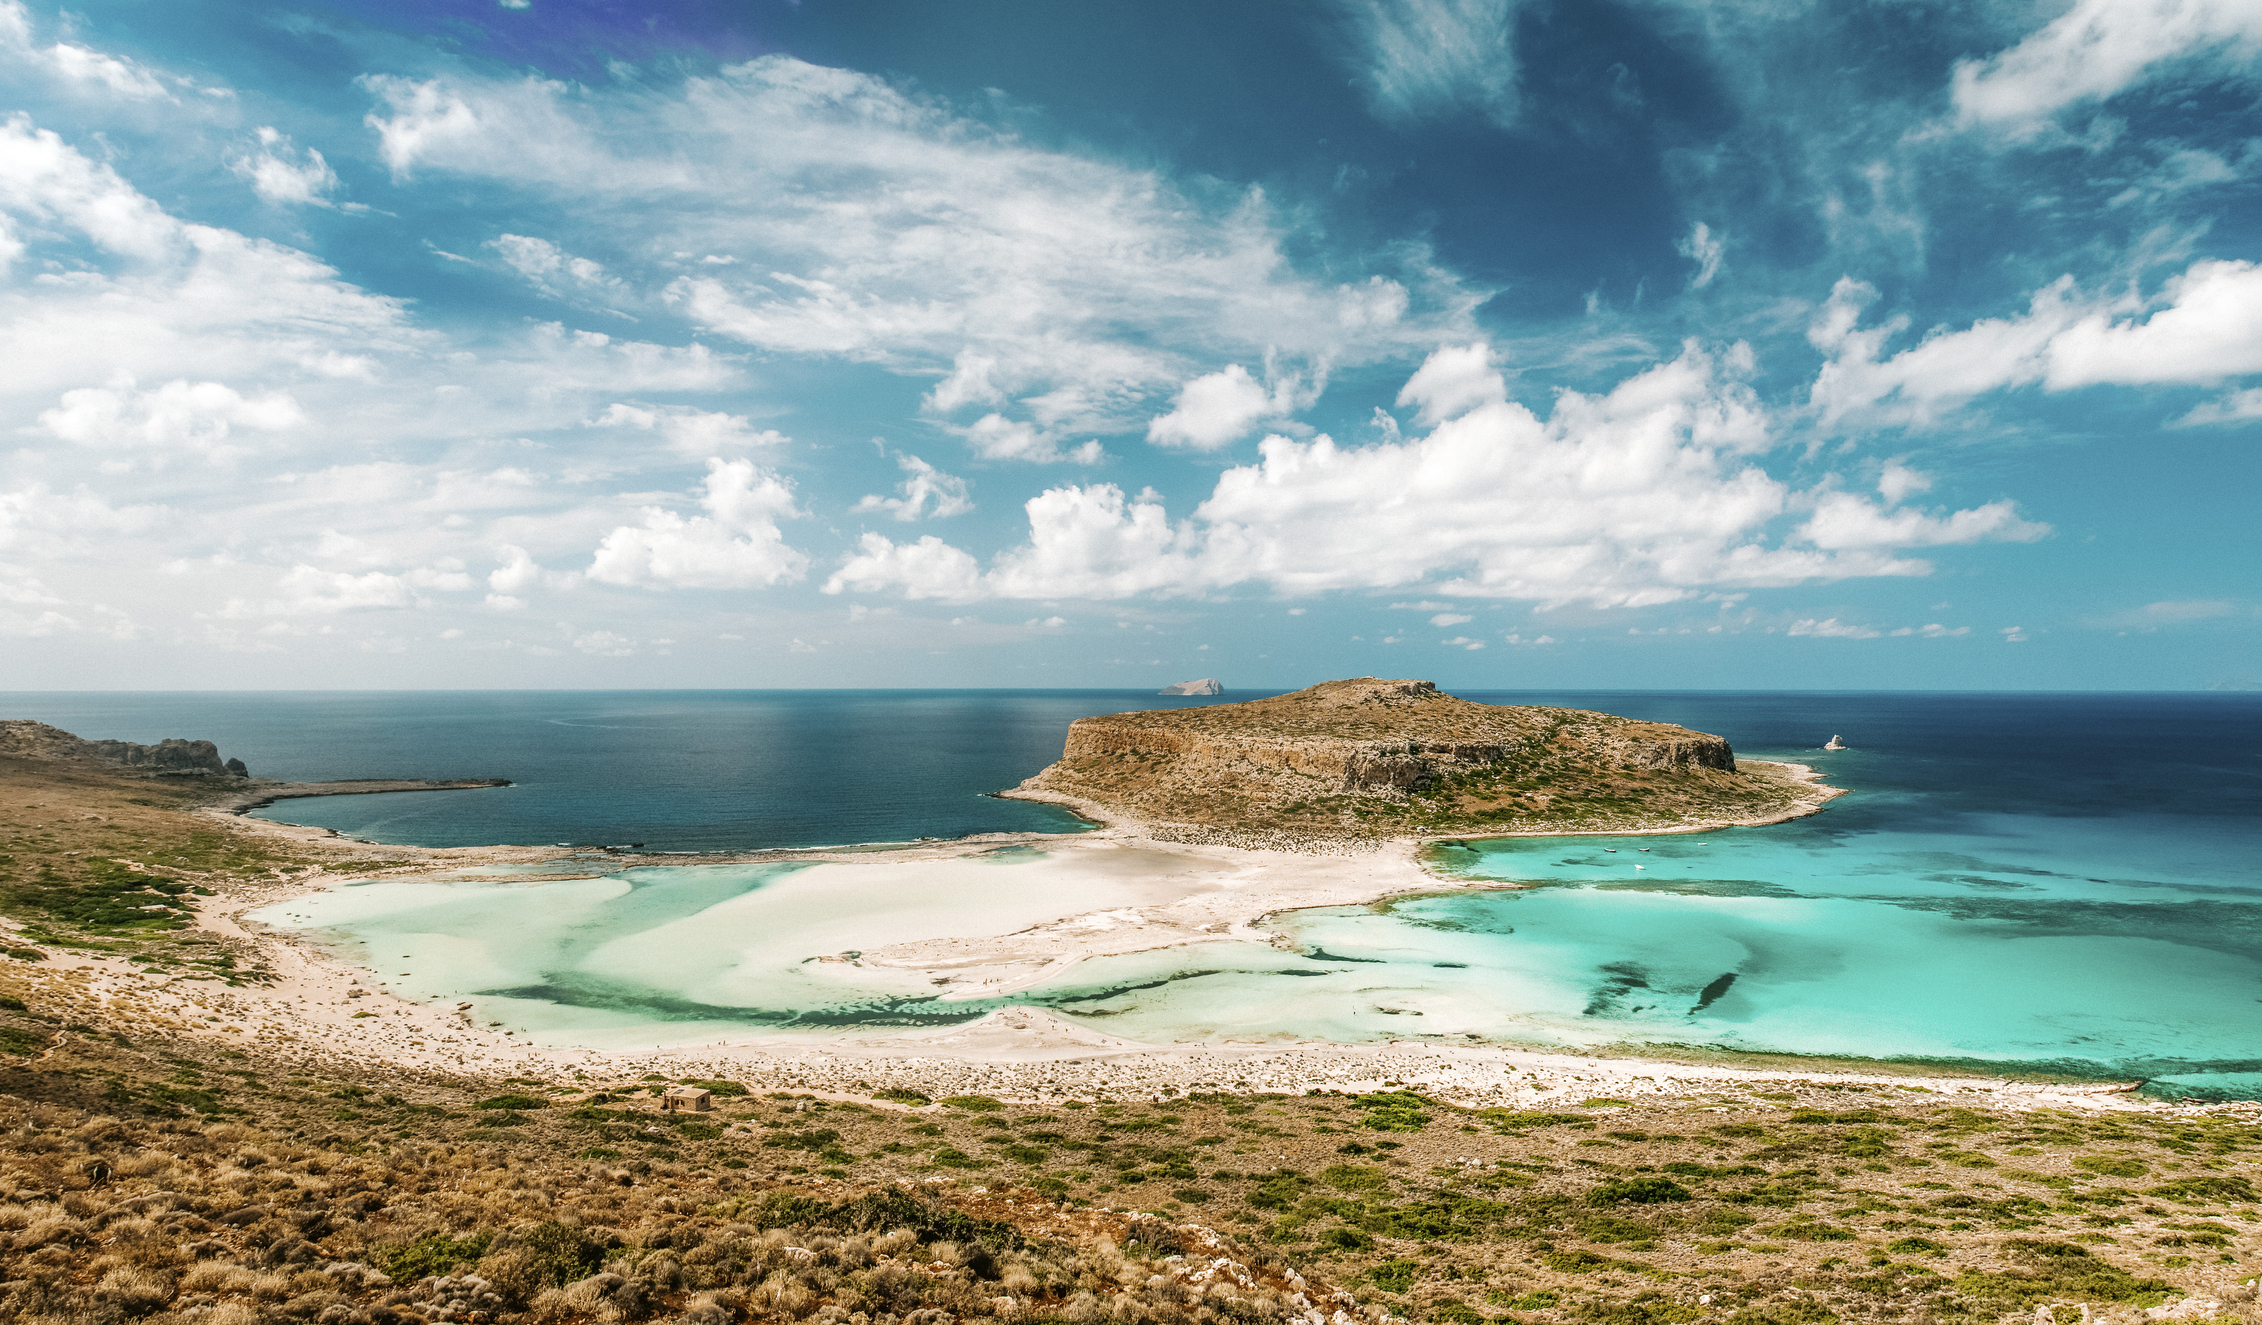 Μπάλος: Μια εξωτική λιμνοθάλασσα στην άκρη της Κρήτης